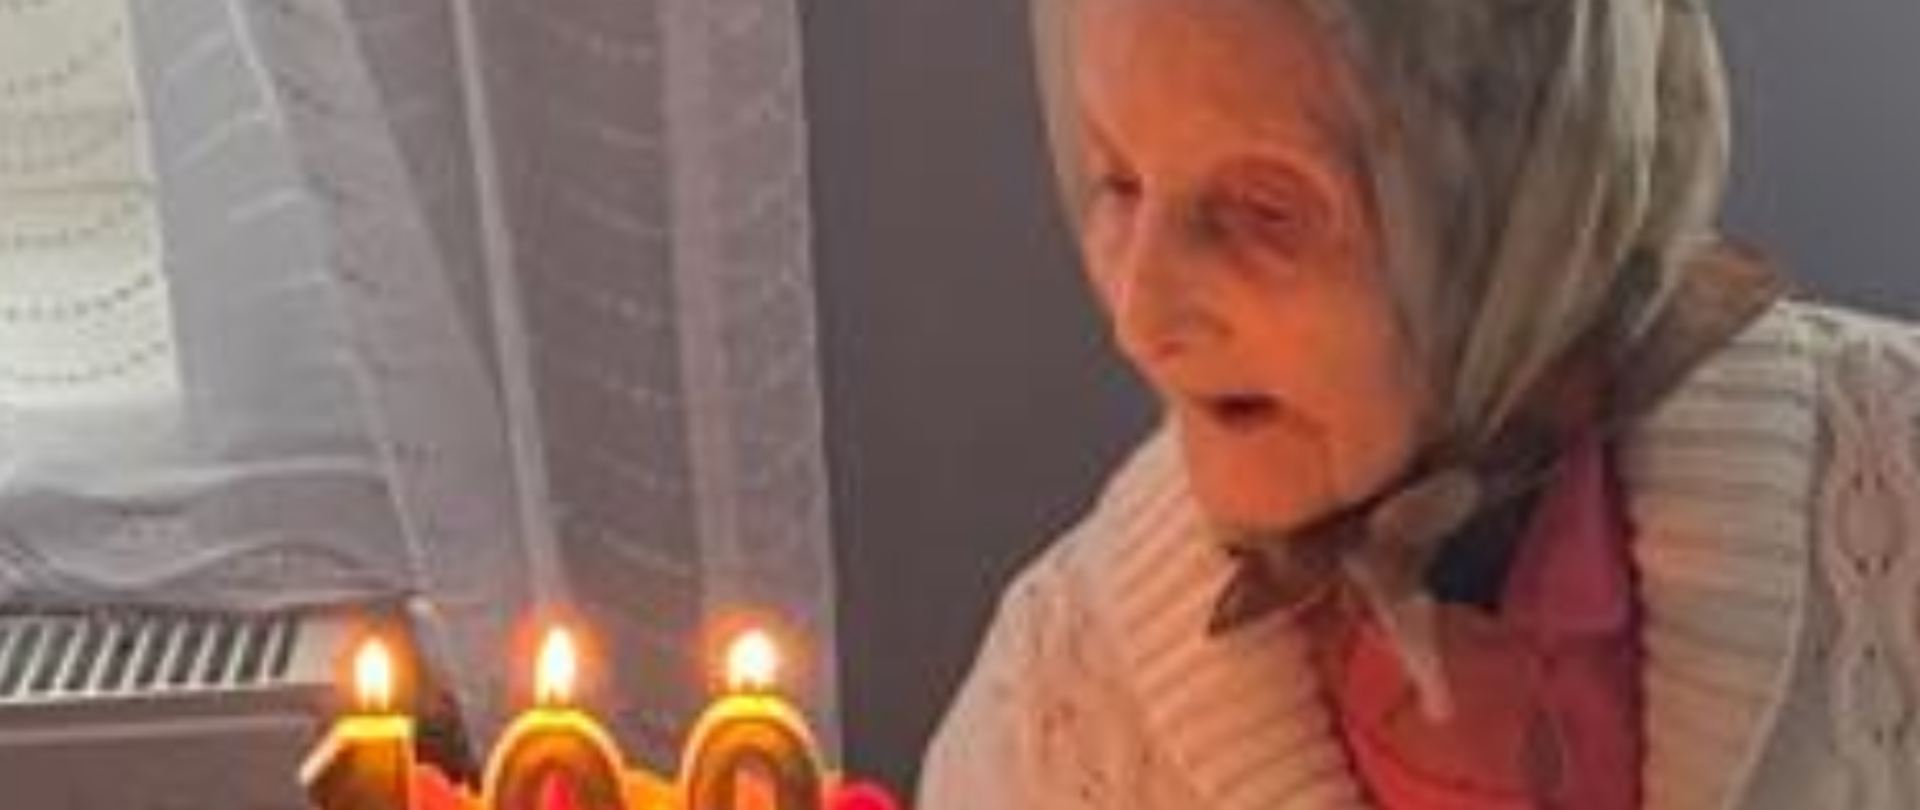 Jubilatka zdmuchuje świeczki z urodzinowego tortu